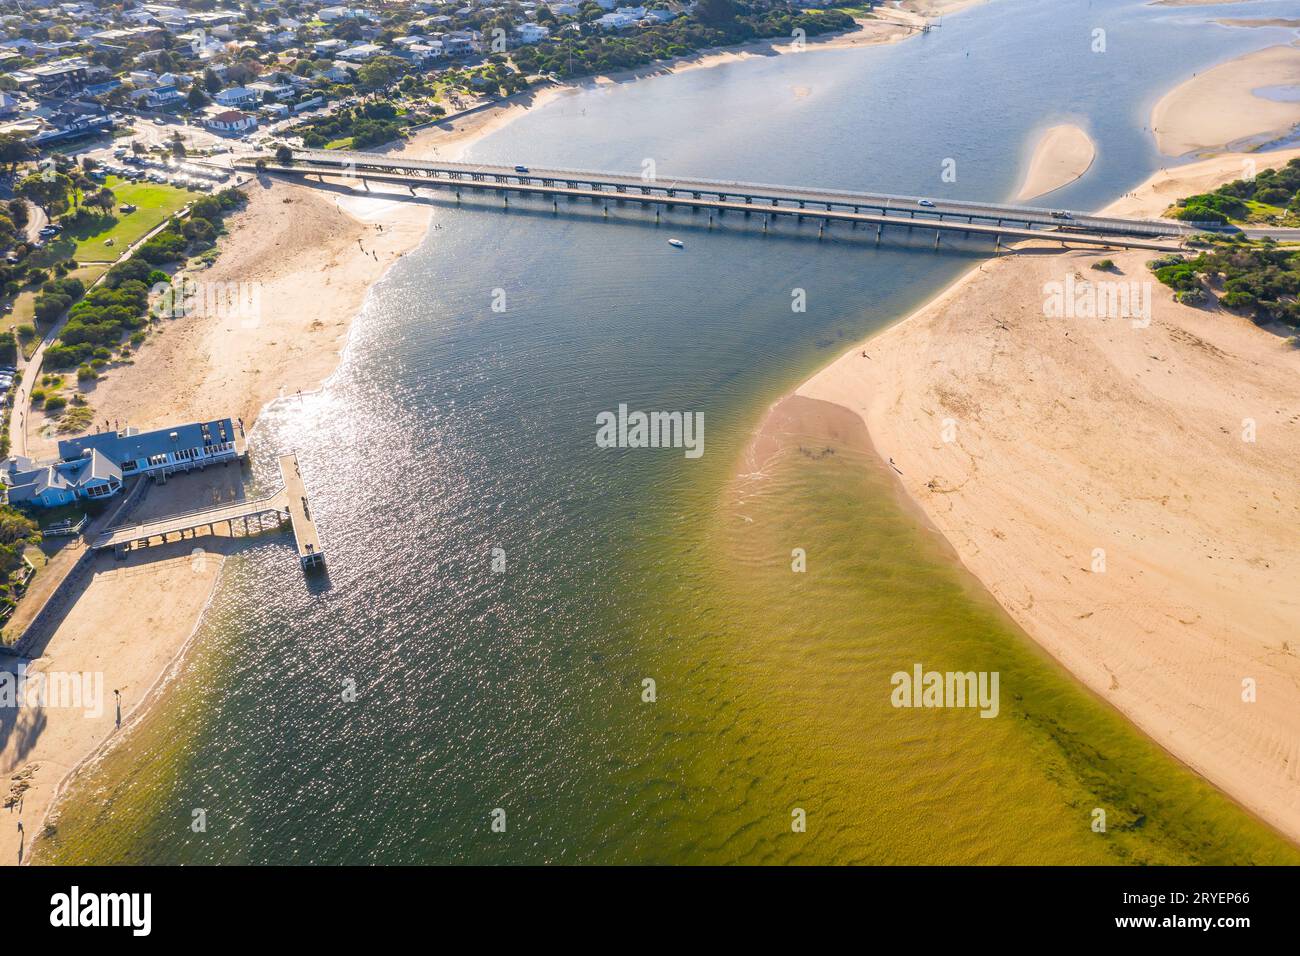 Vista aerea dei ponti gemelli su un ampio fiume costiero con spiagge su entrambi i lati a Barwon Heads, Victoria, Australia. Foto Stock